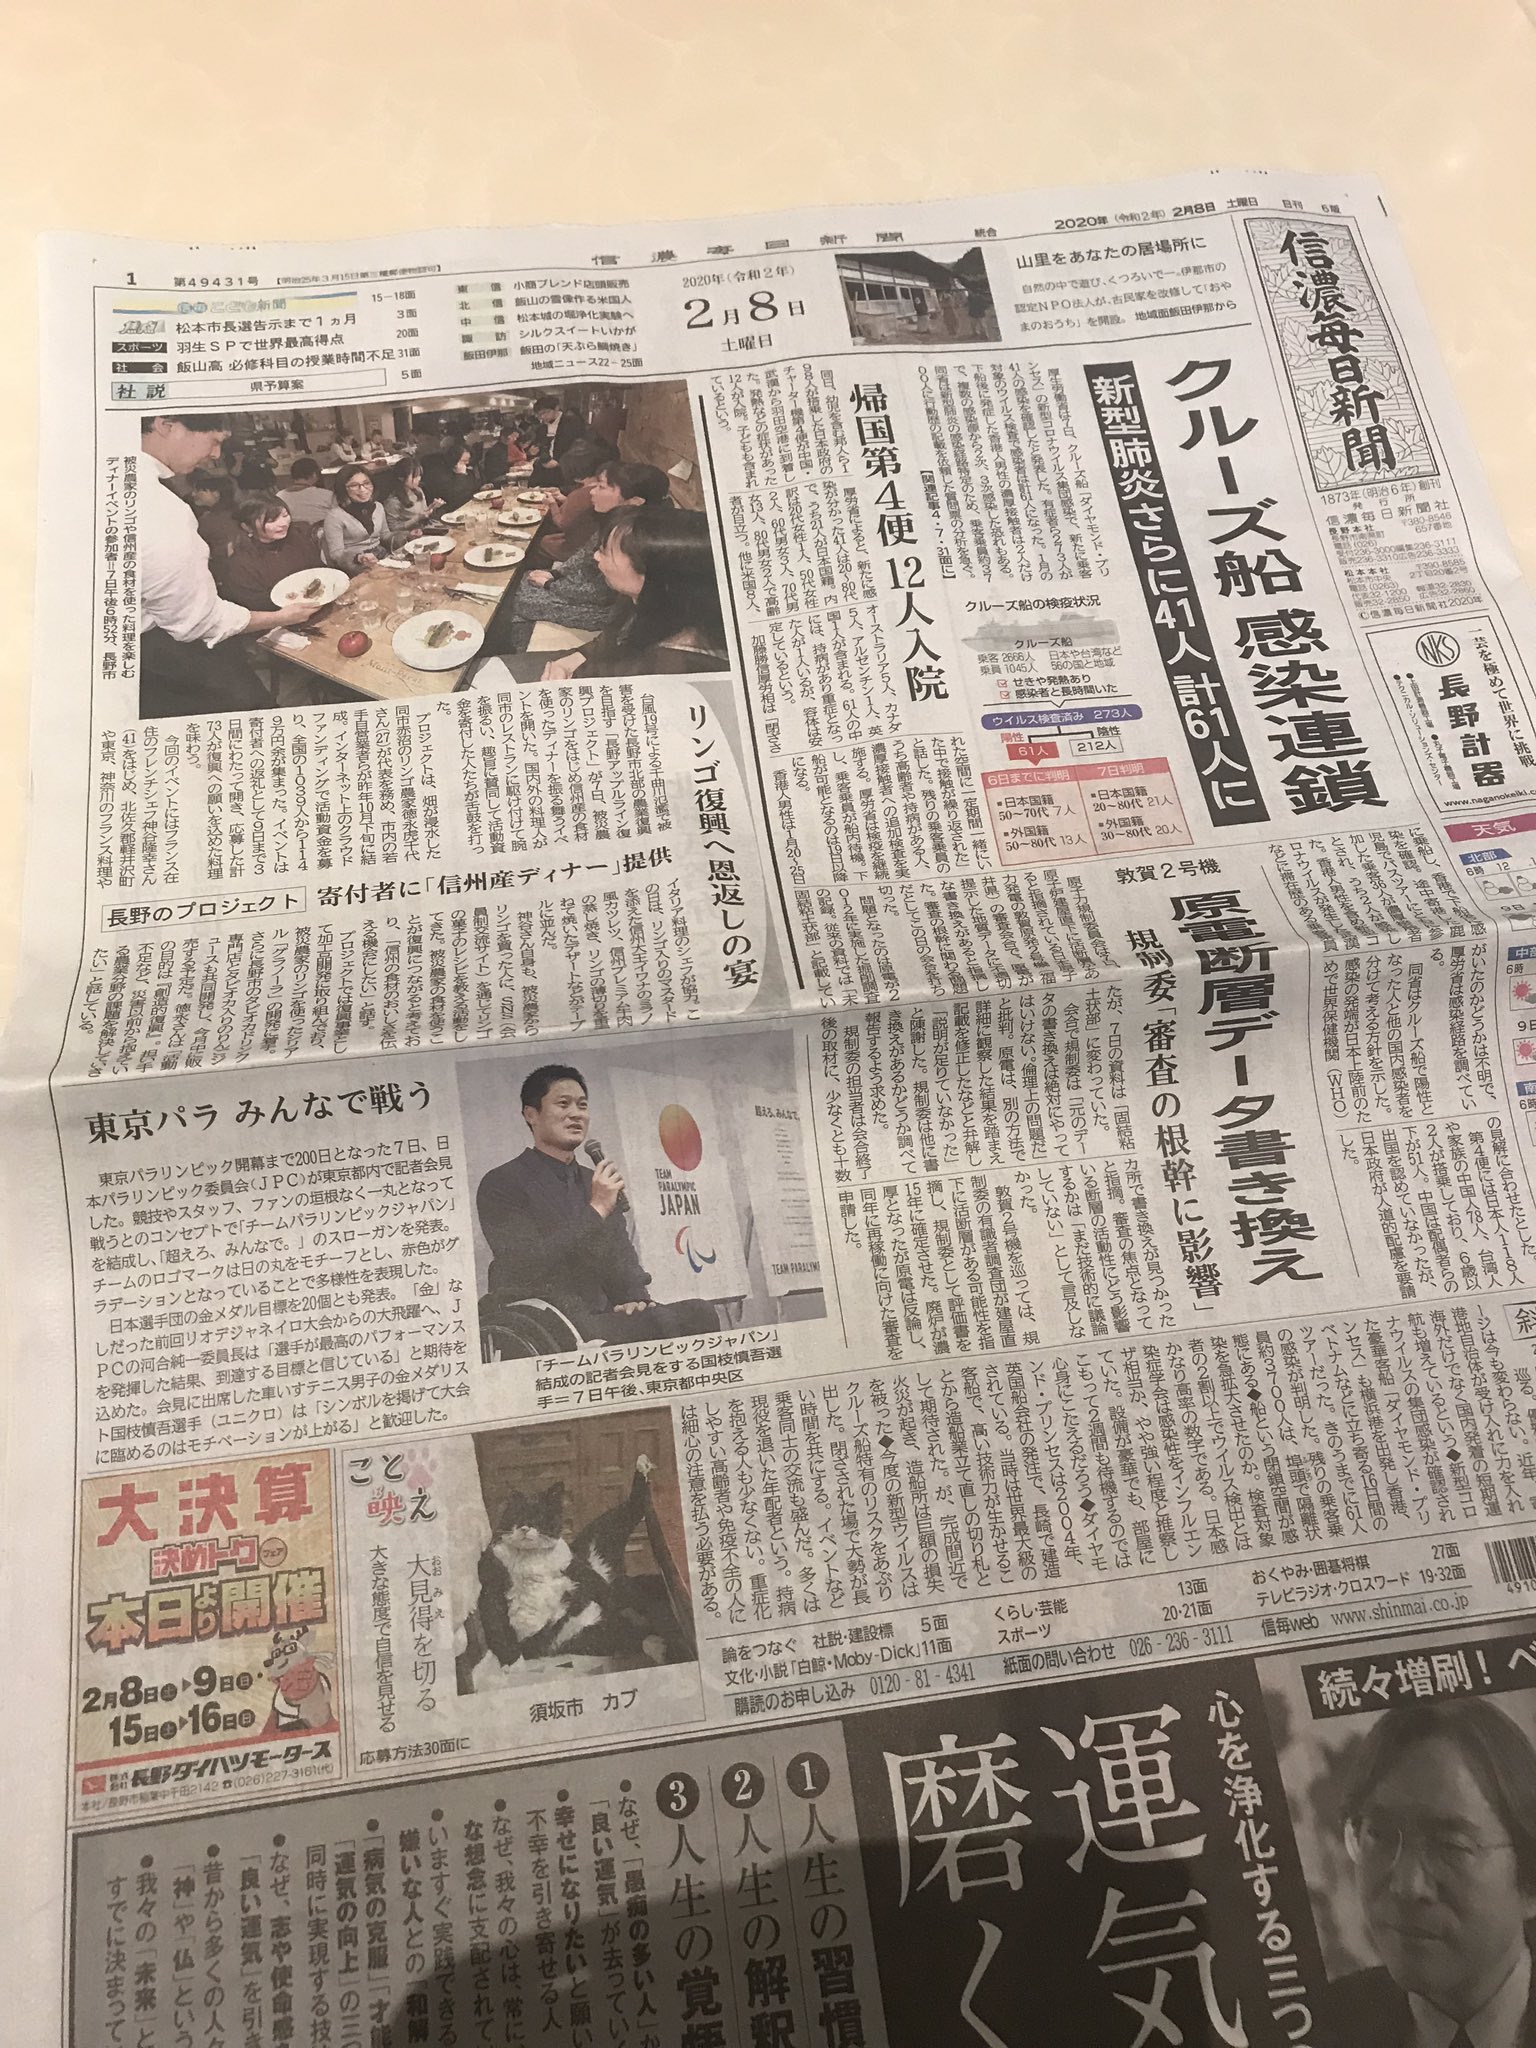 Takayuki Kamiya 昨日ディナーにいらっしゃった方 信濃毎日新聞にもう載ってますよ 長野コラボディナー Cookforjapan T Co Erjrkimvdx Twitter